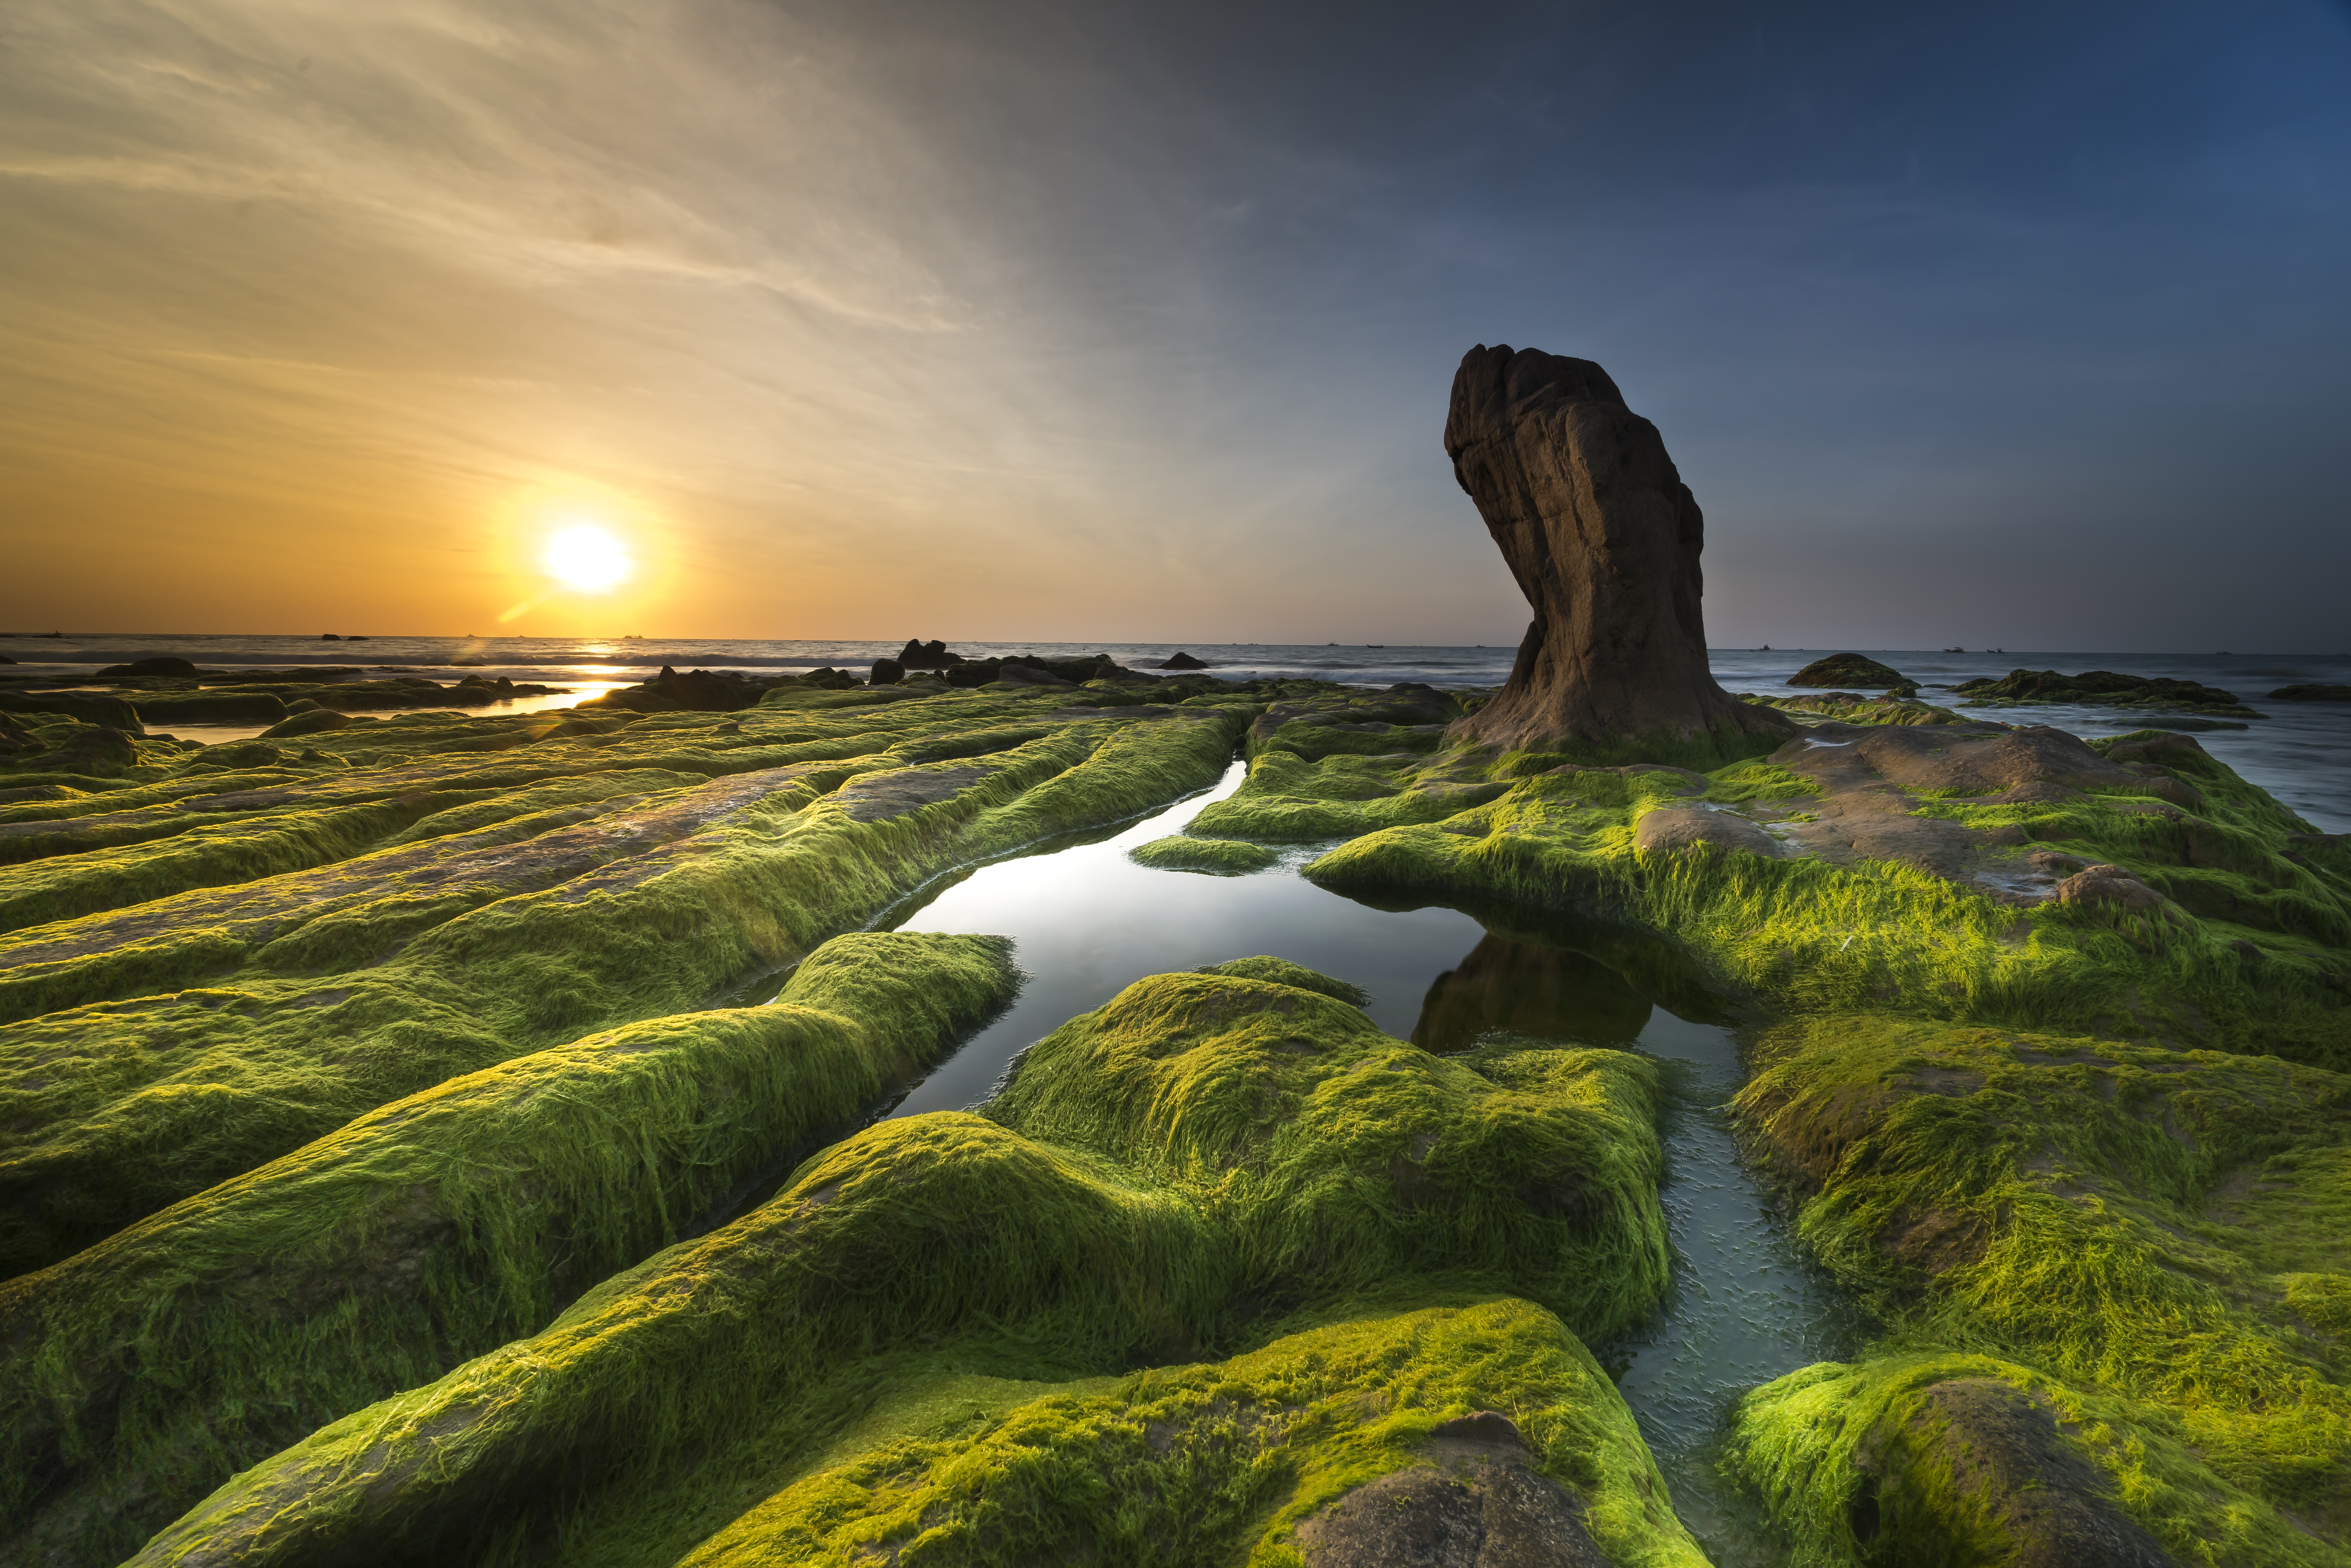 Algae-Covered Rocks by Quang Nguyen vinh